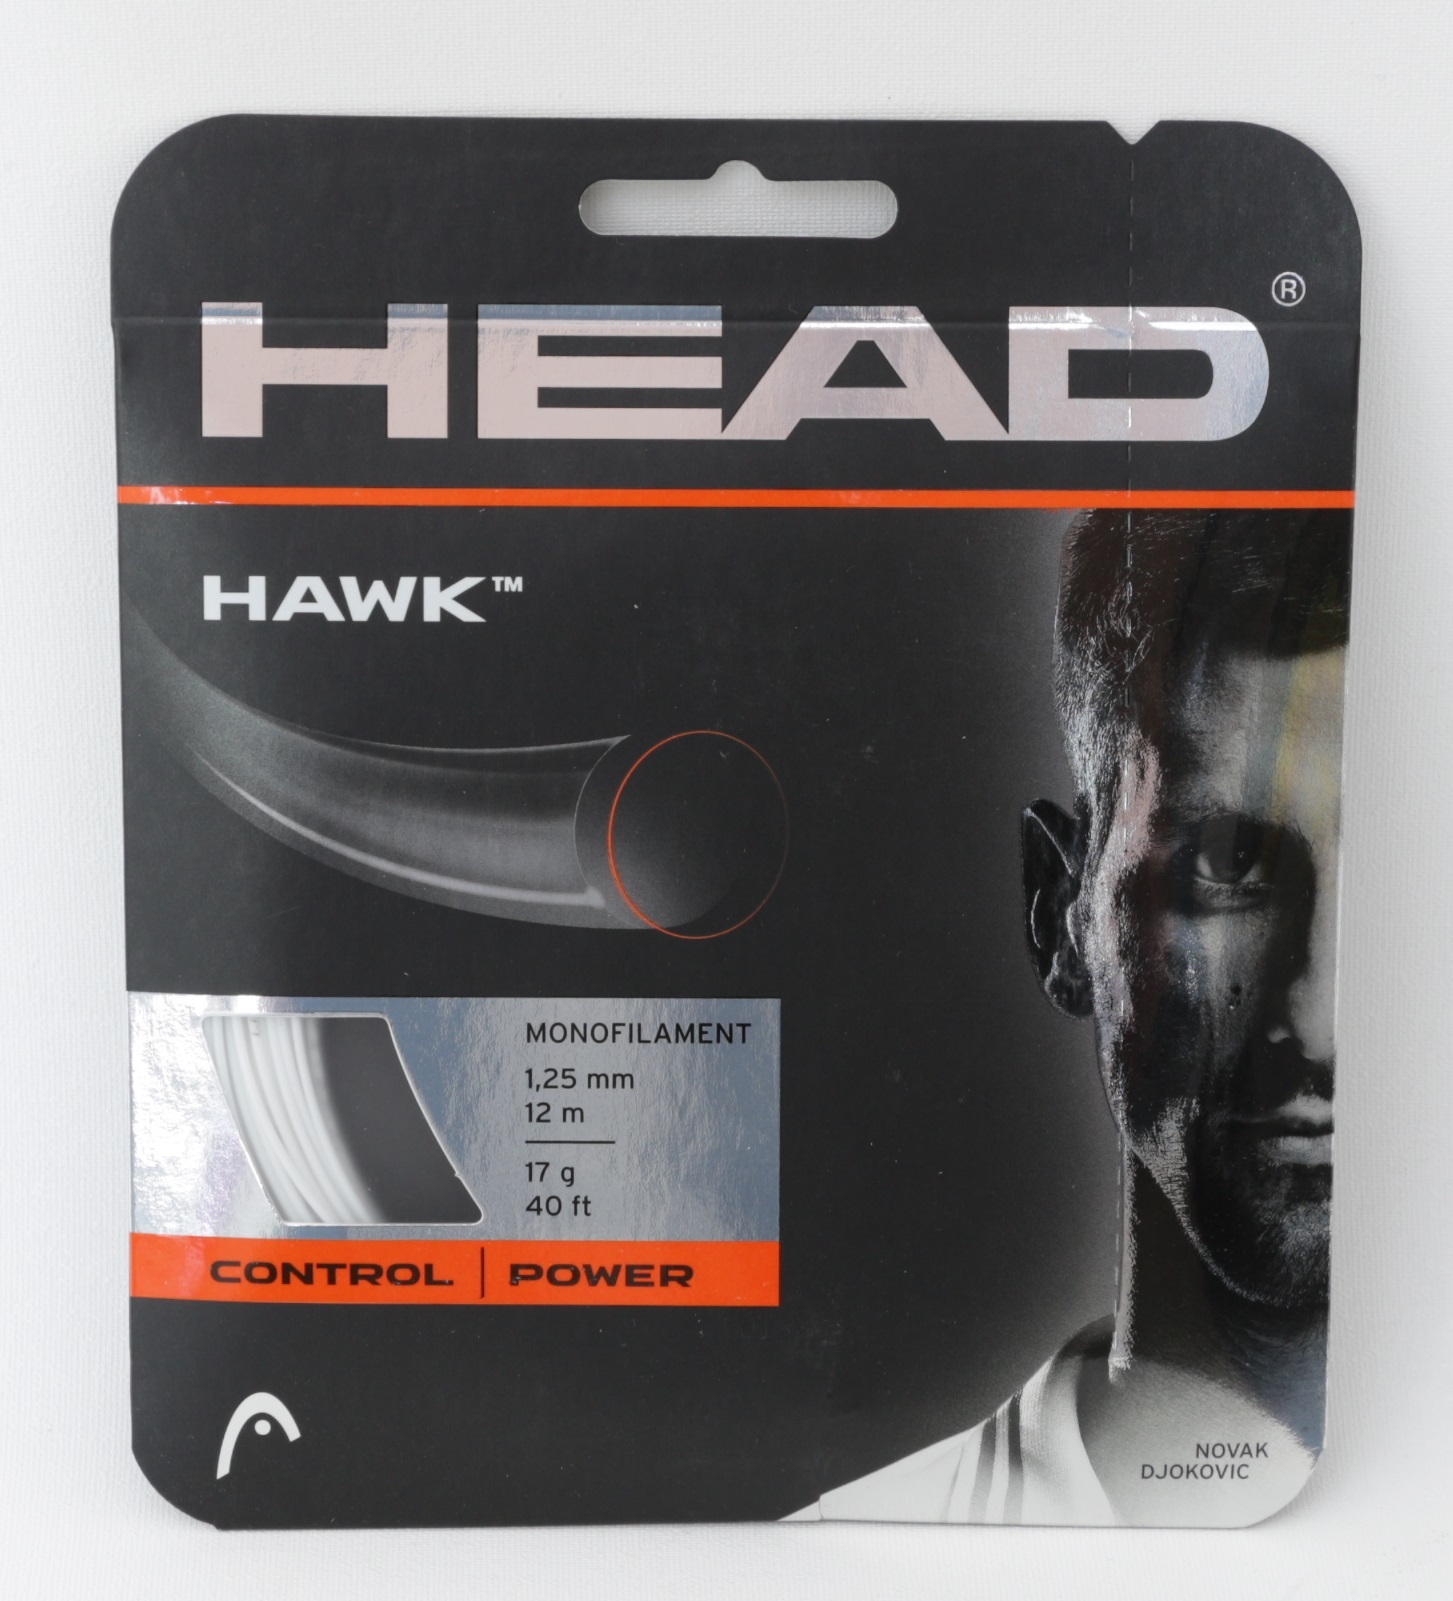 Head Hawk, 12m